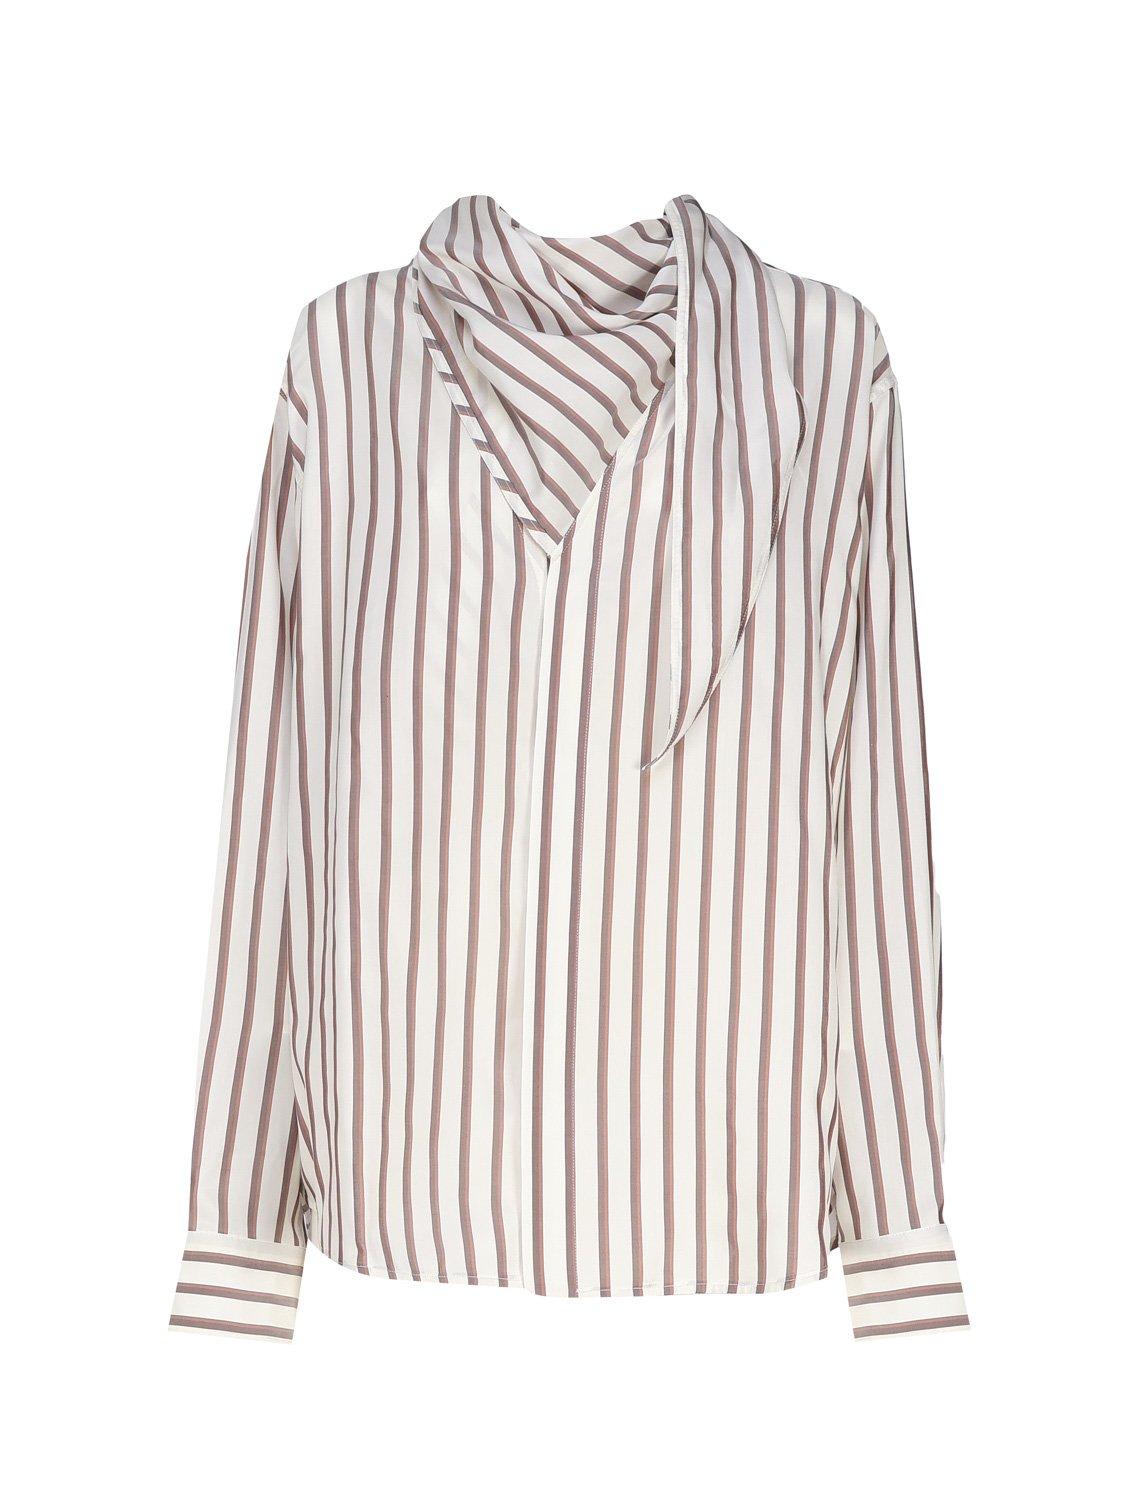 Bottega Veneta Striped Shirt